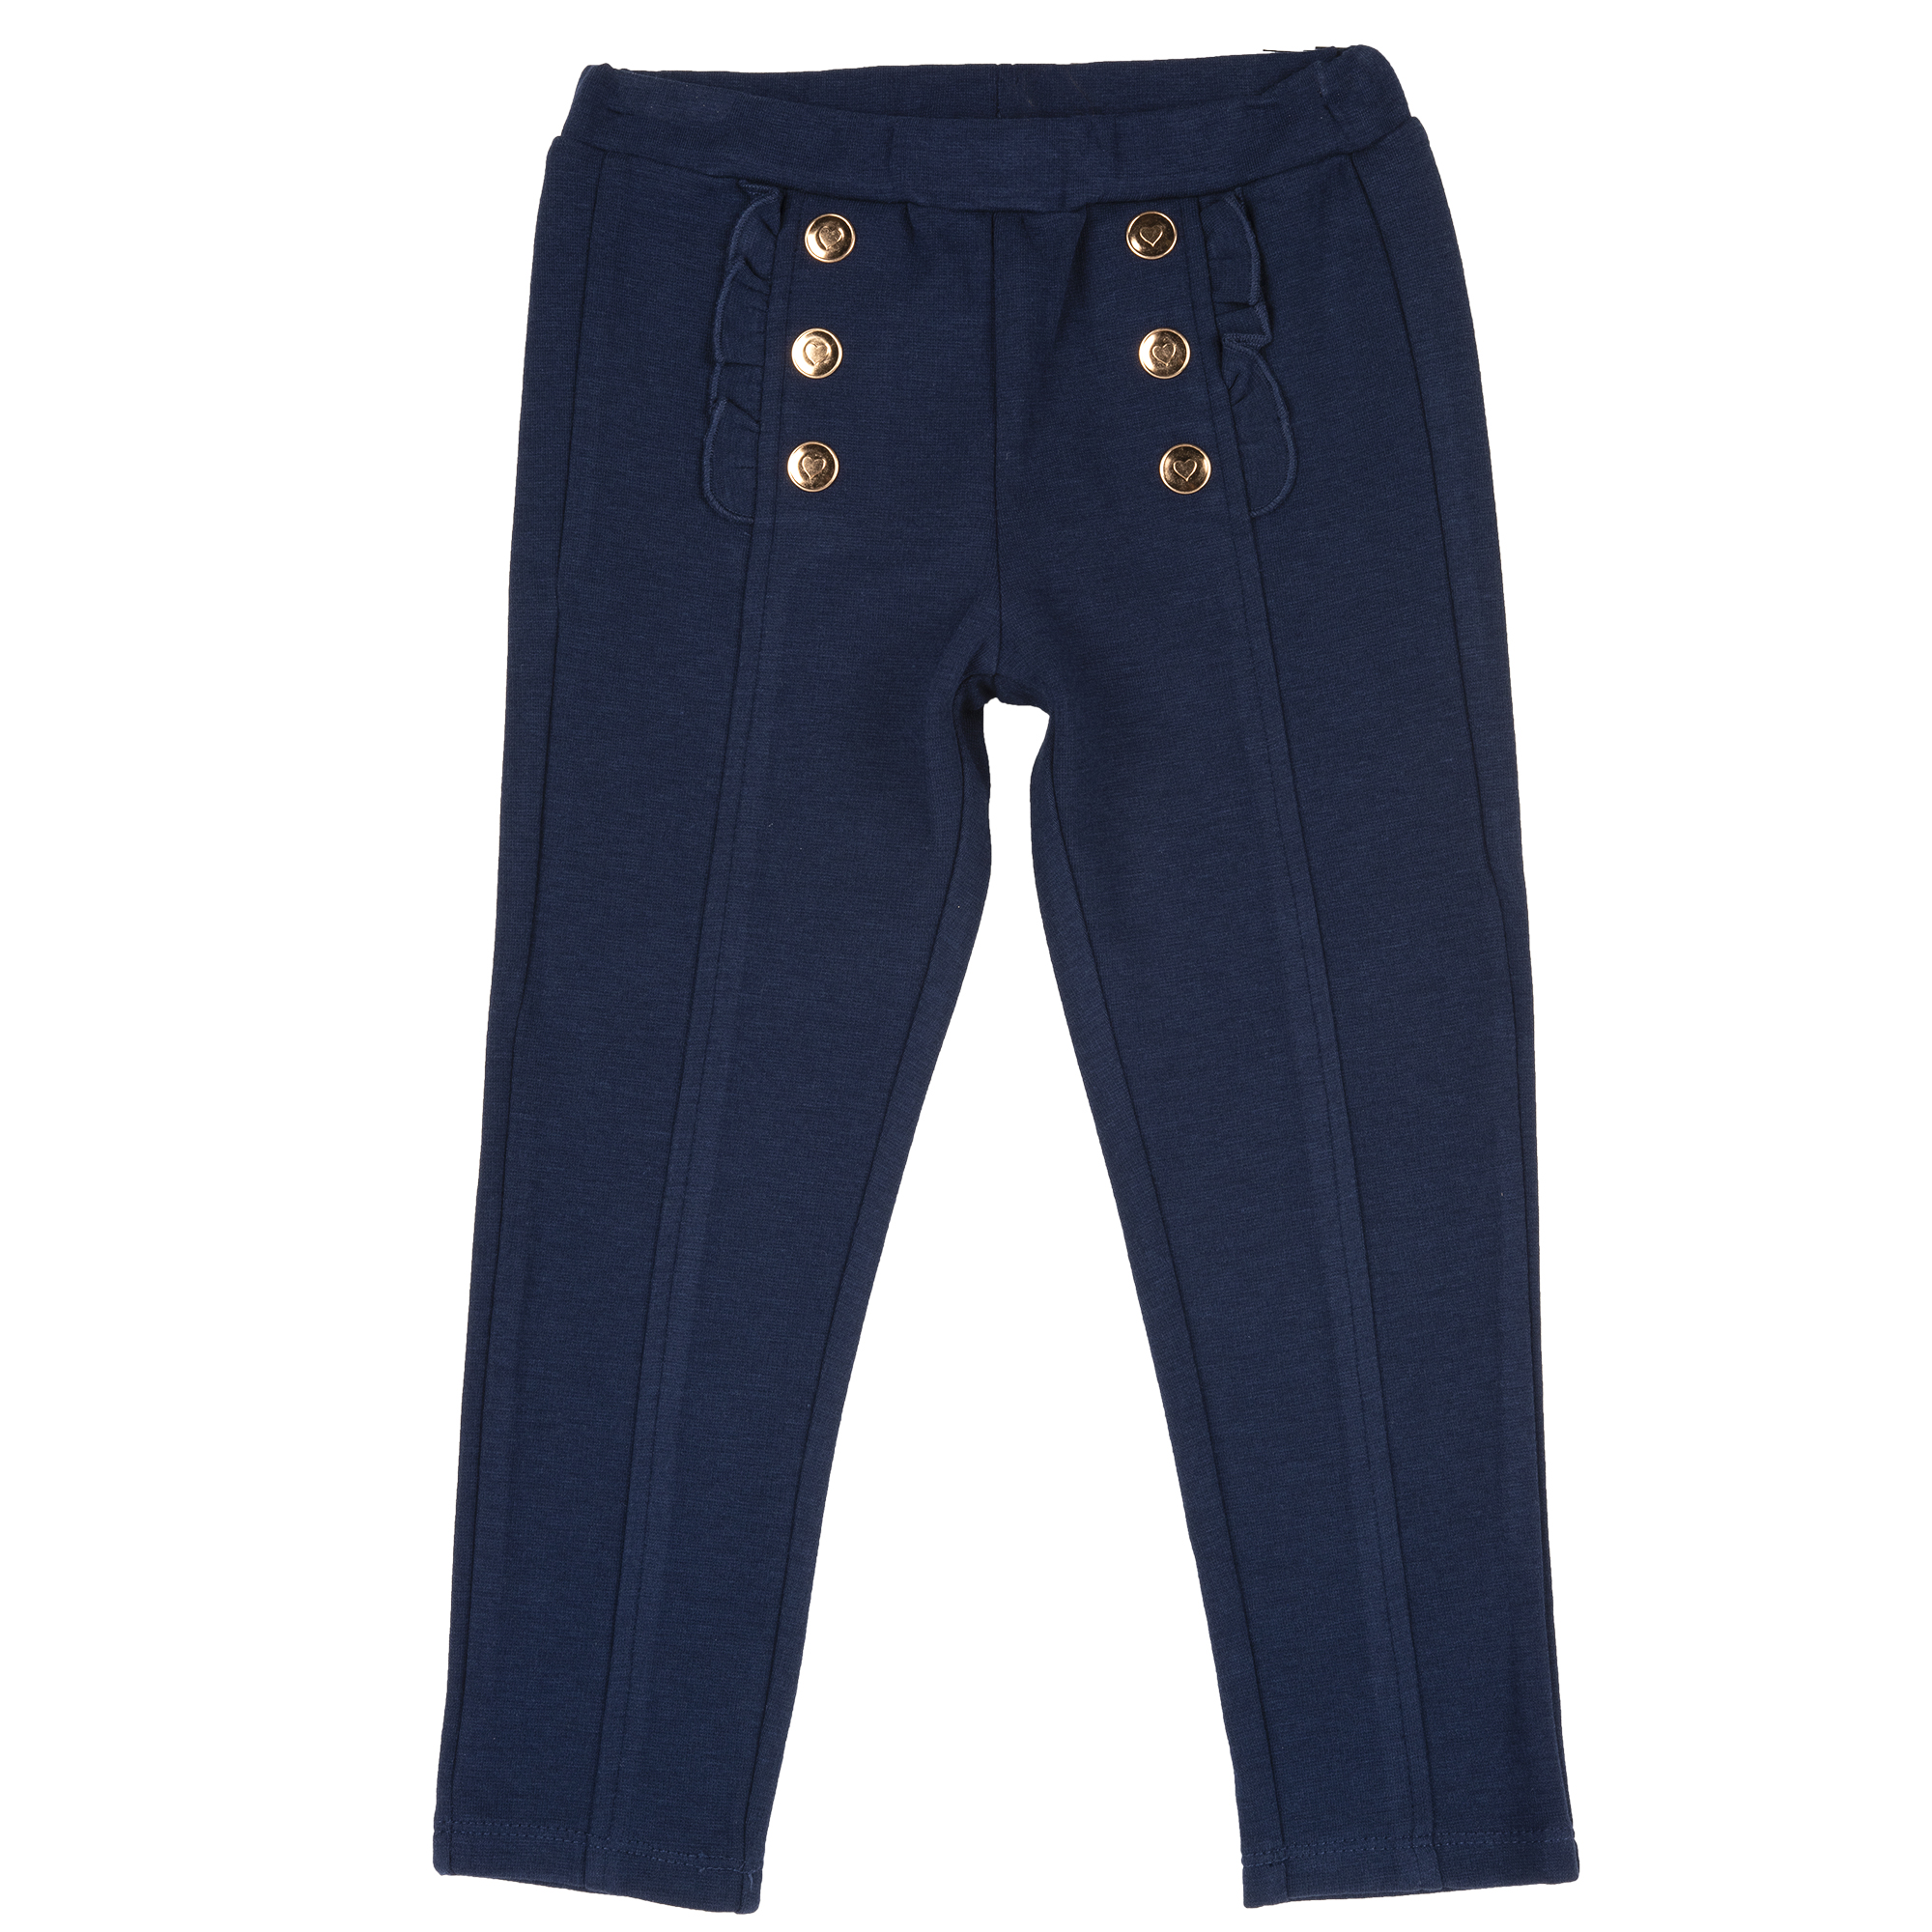 Pantaloni Copii Chicco, Albastru Inchis, 08751-63mc